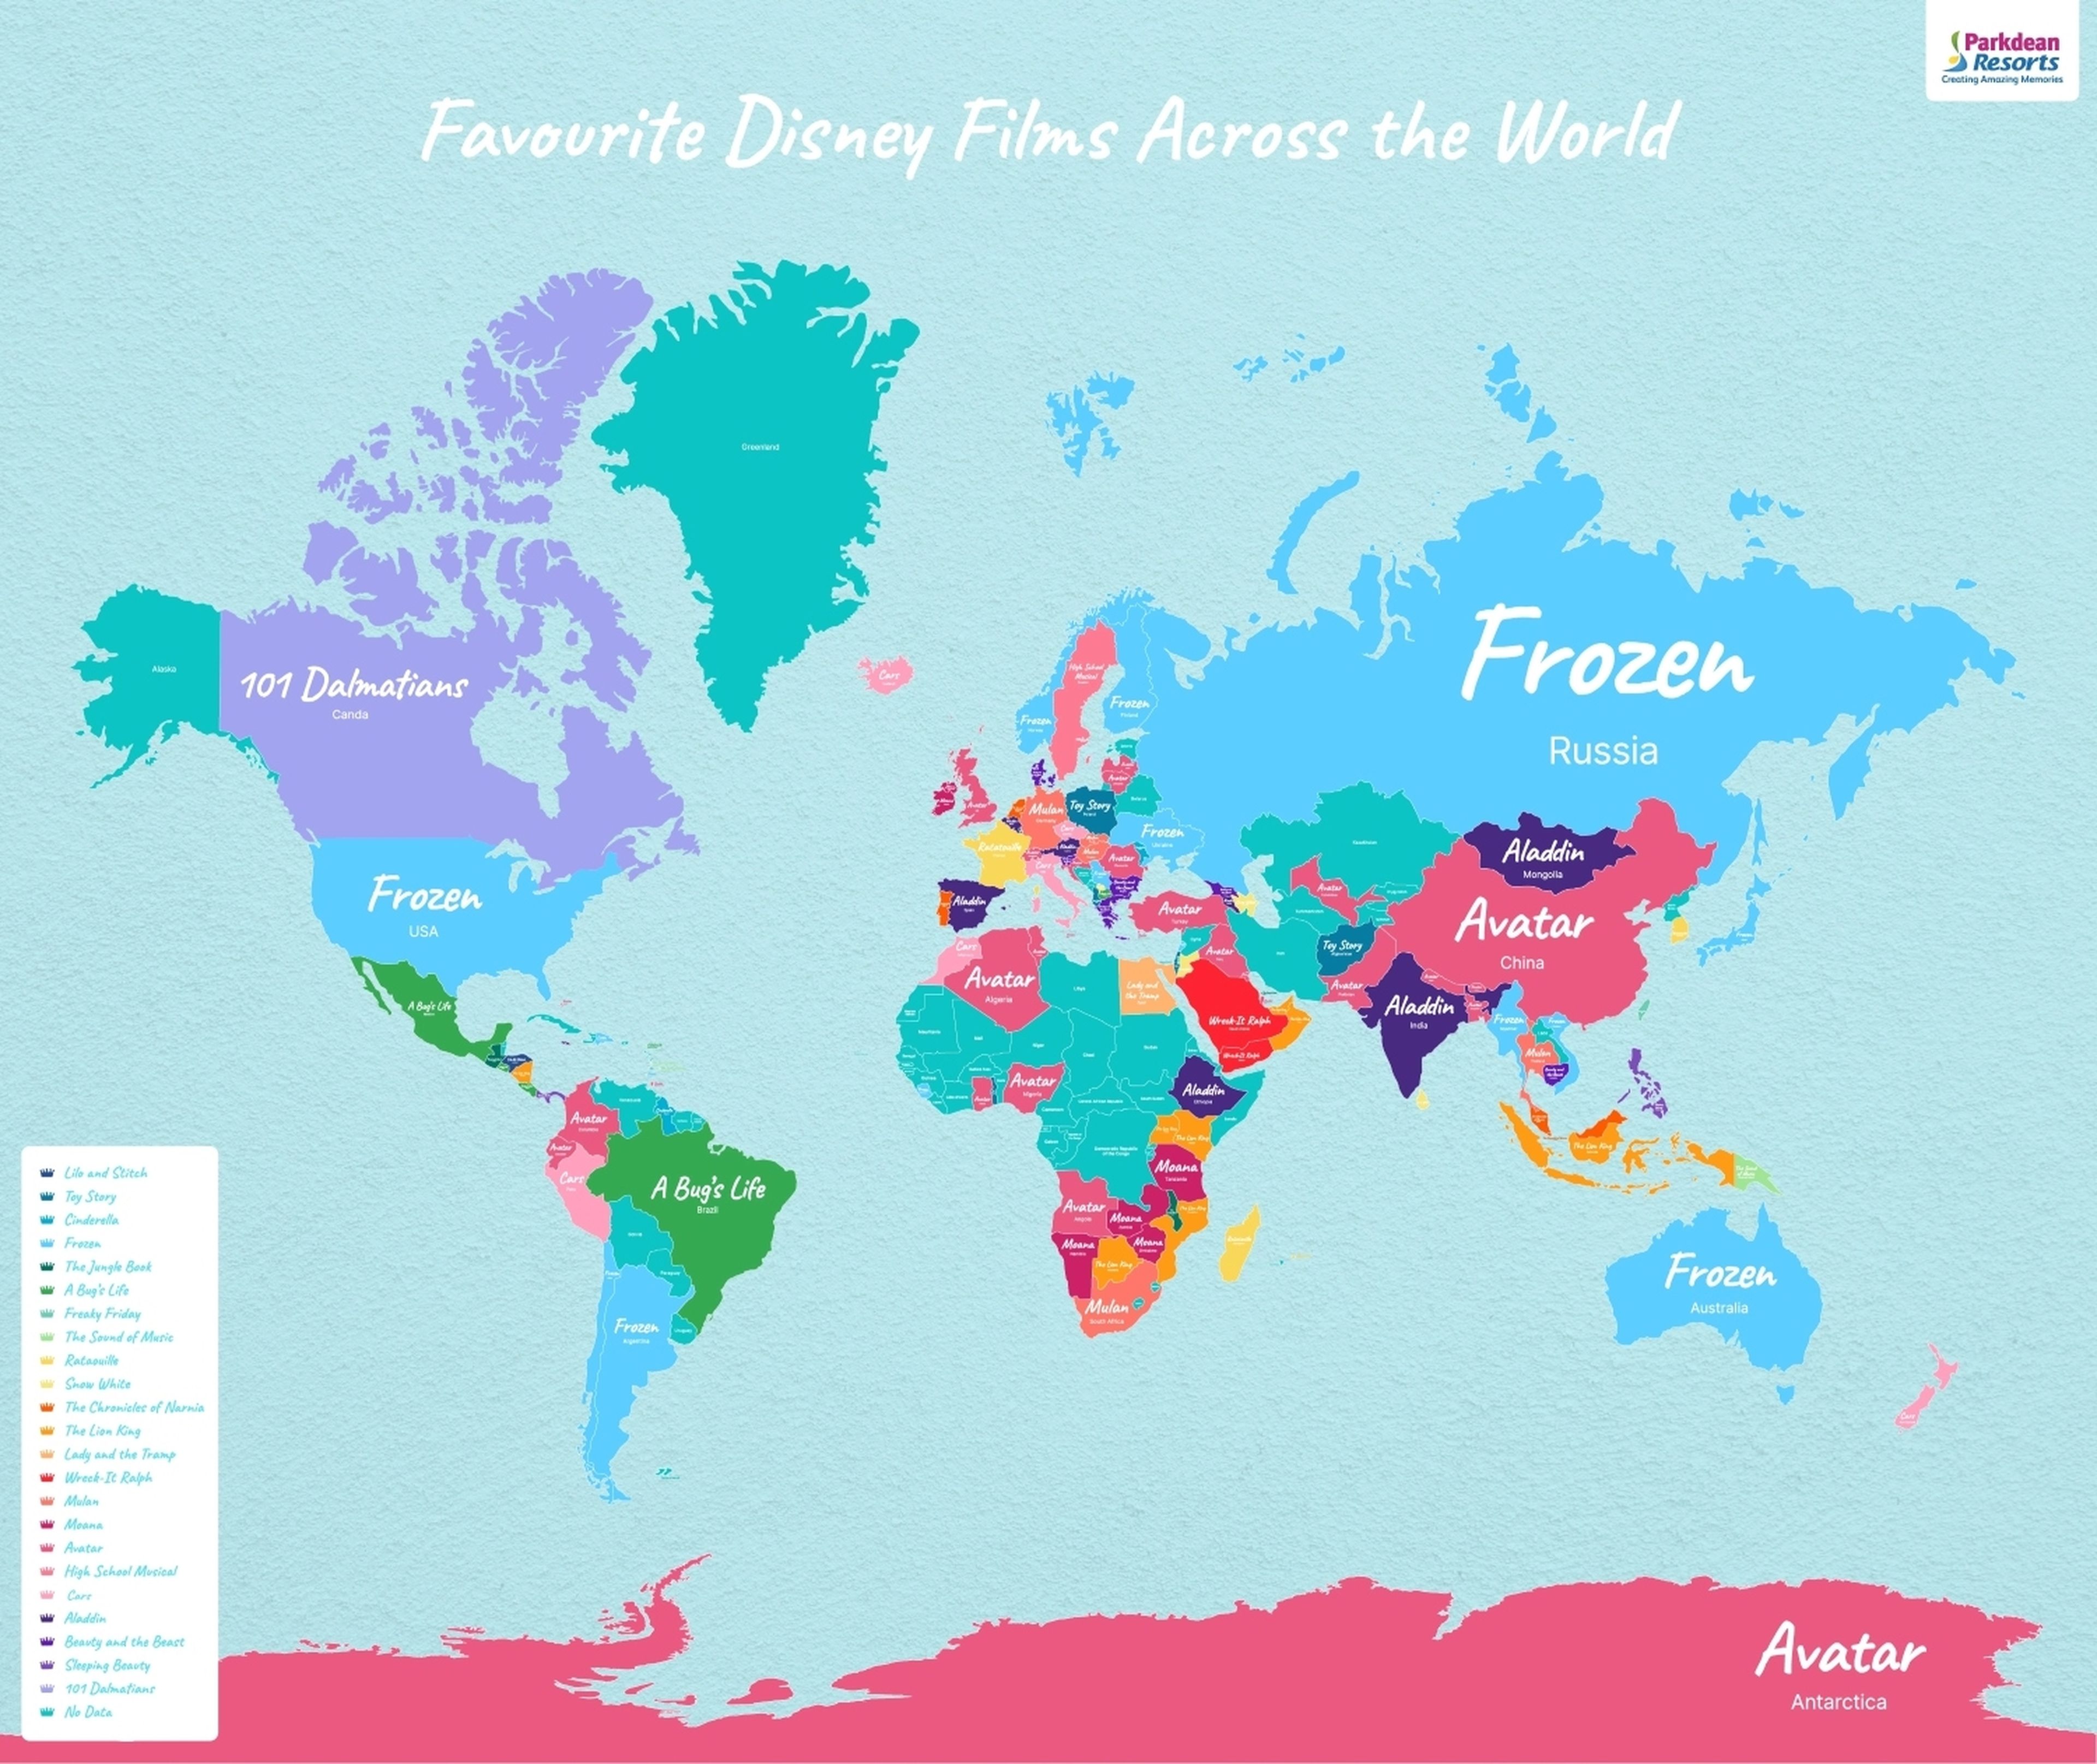 Películas favoritas de Disney por países